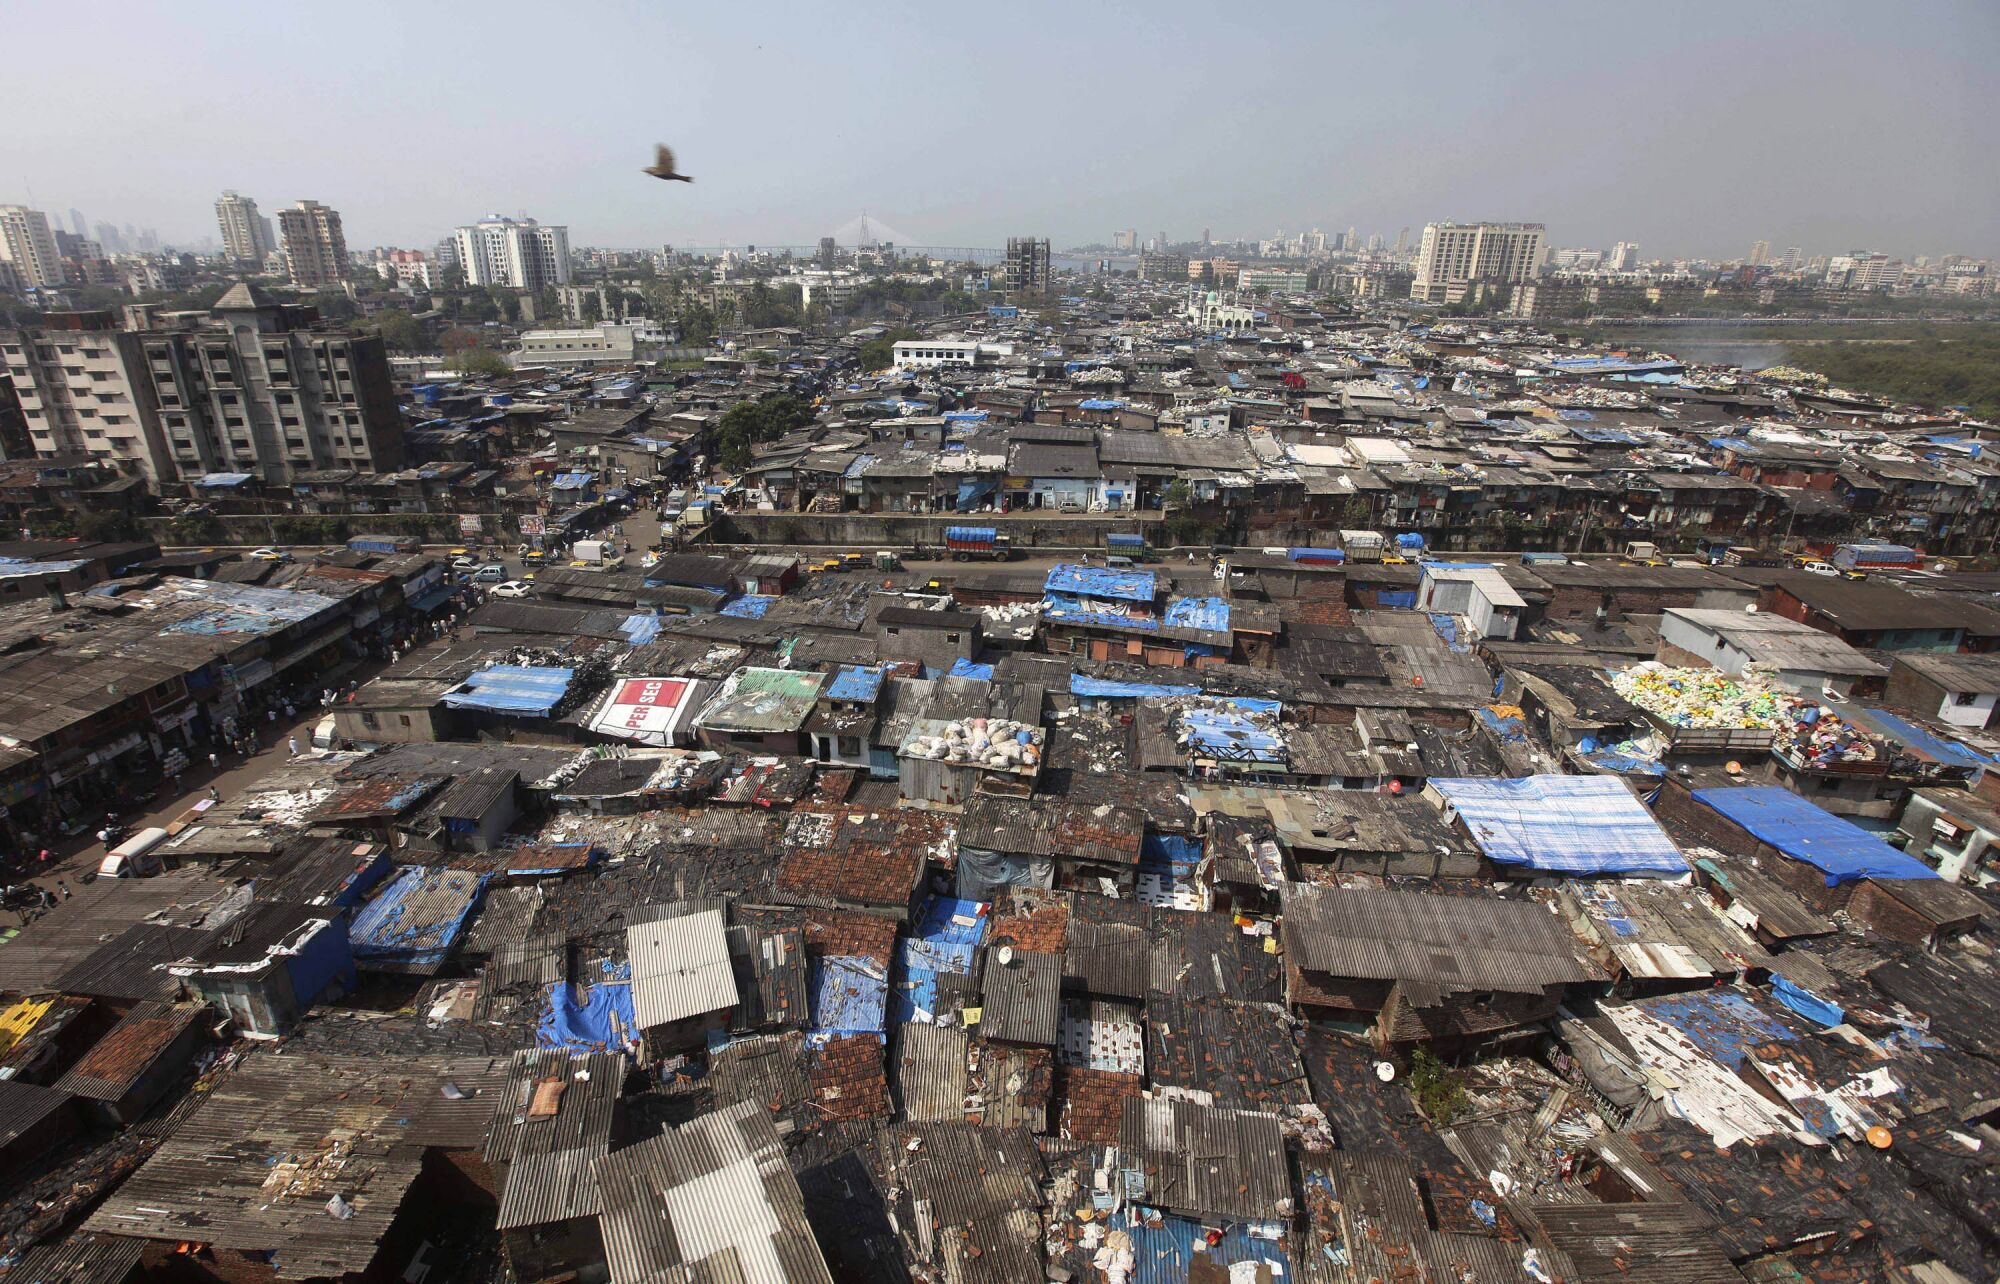 case study on slums in mumbai